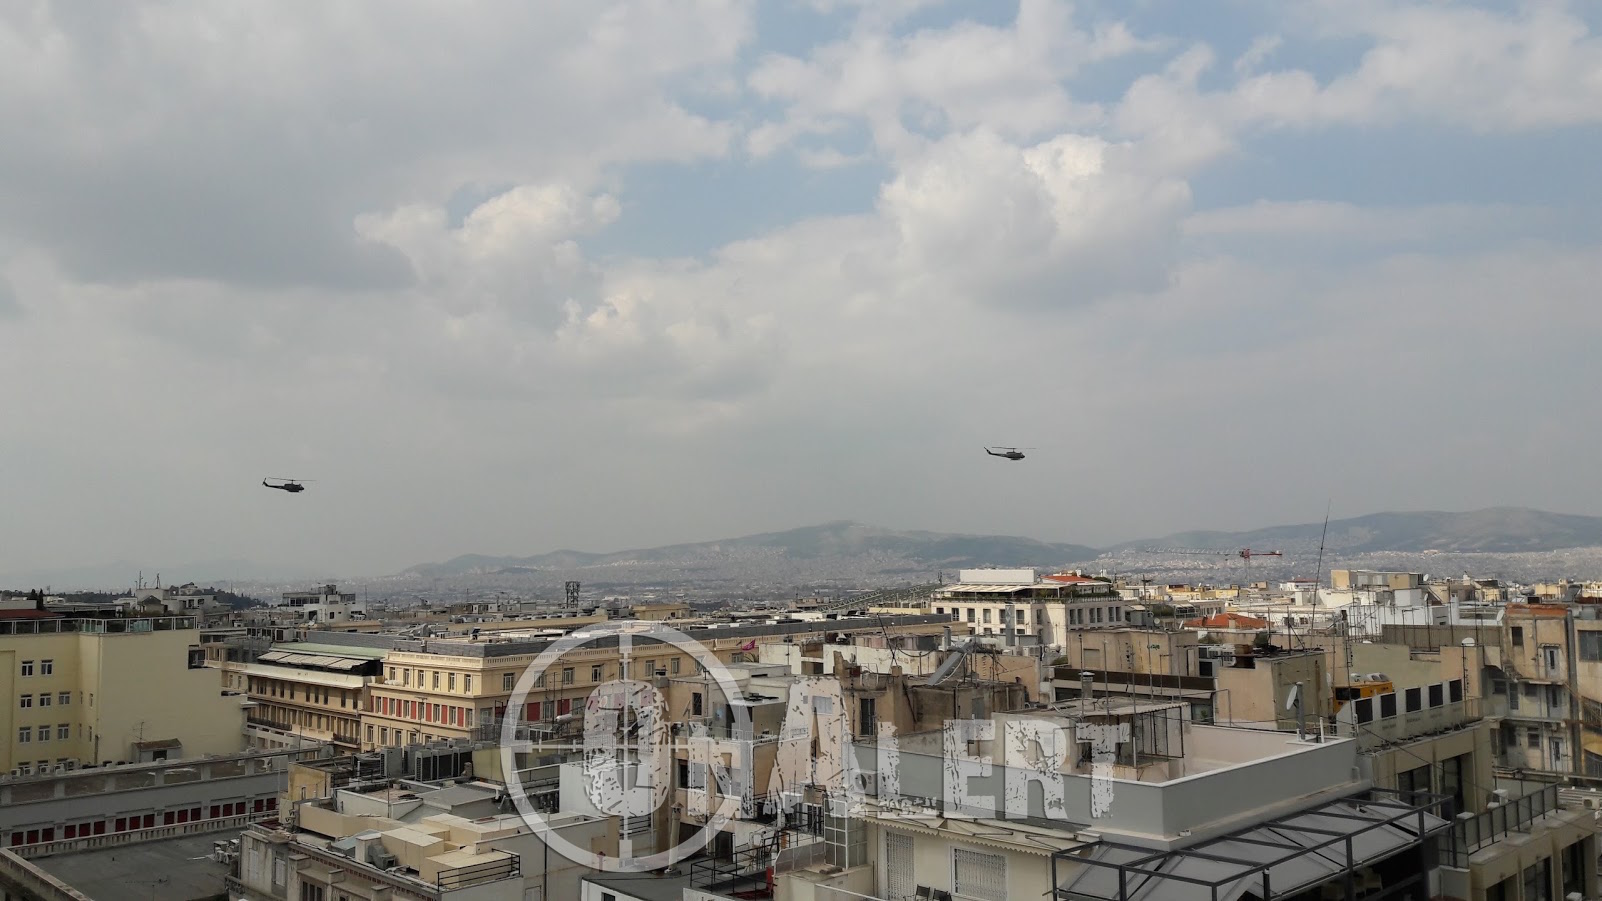 Μαχητικά αεροσκάφη στον Αττικό ουρανό για την παρέλαση της 25ης Μαρτίου - Φωτογραφία 4